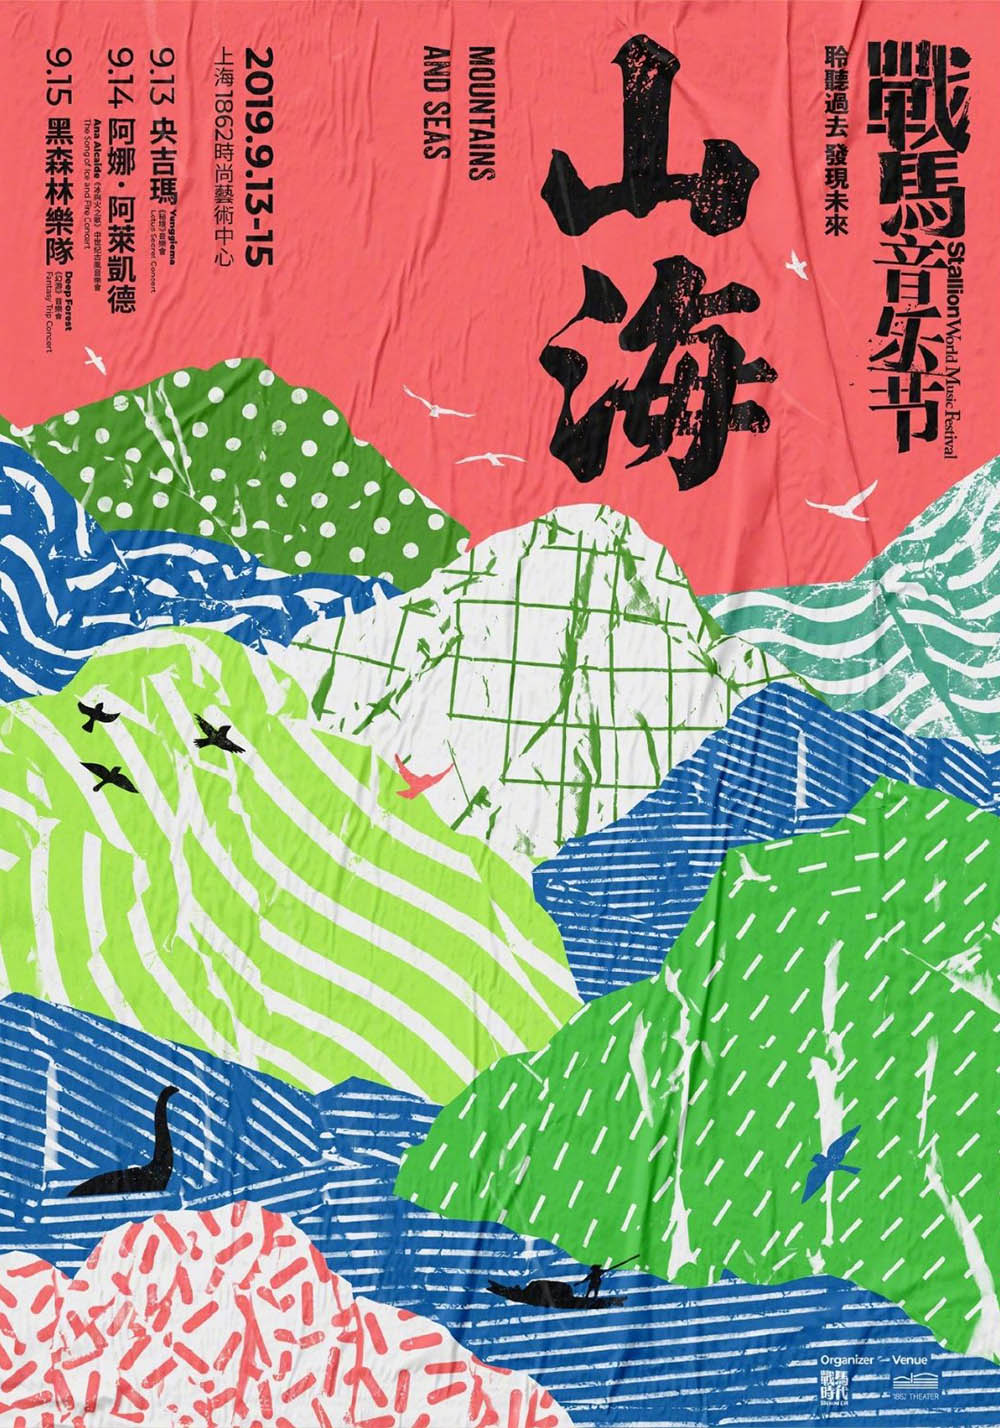 9张中文海报设计